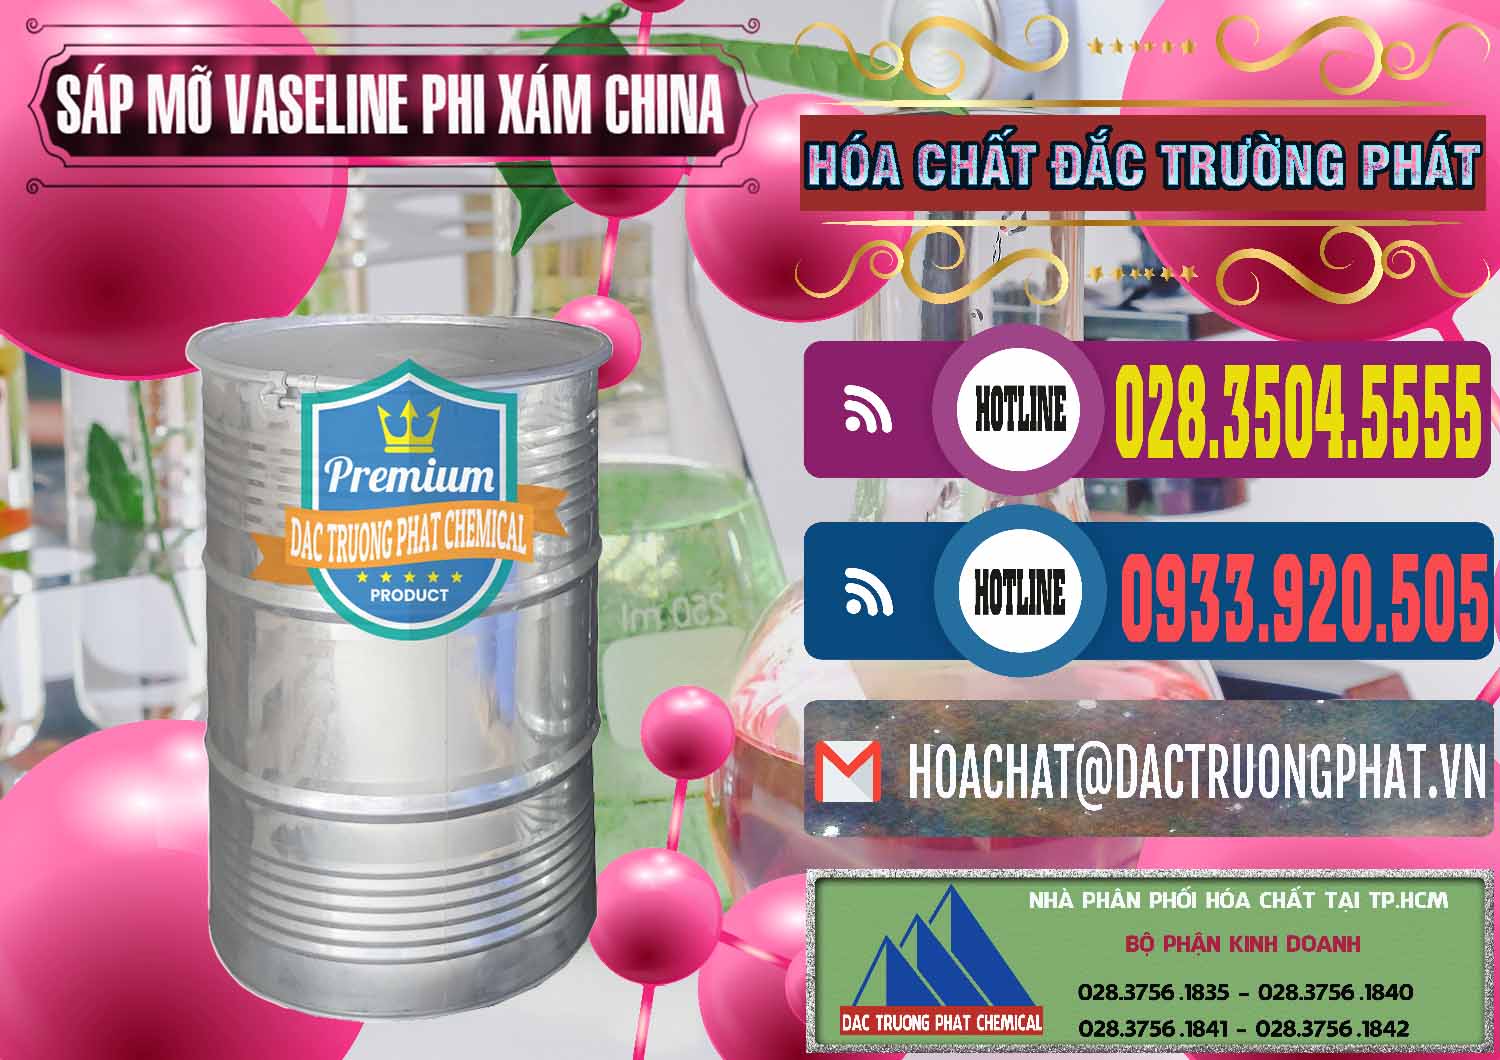 Chuyên phân phối ( bán ) Sáp Mỡ Vaseline Phi Xám Trung Quốc China - 0291 - Chuyên phân phối & kinh doanh hóa chất tại TP.HCM - muabanhoachat.com.vn